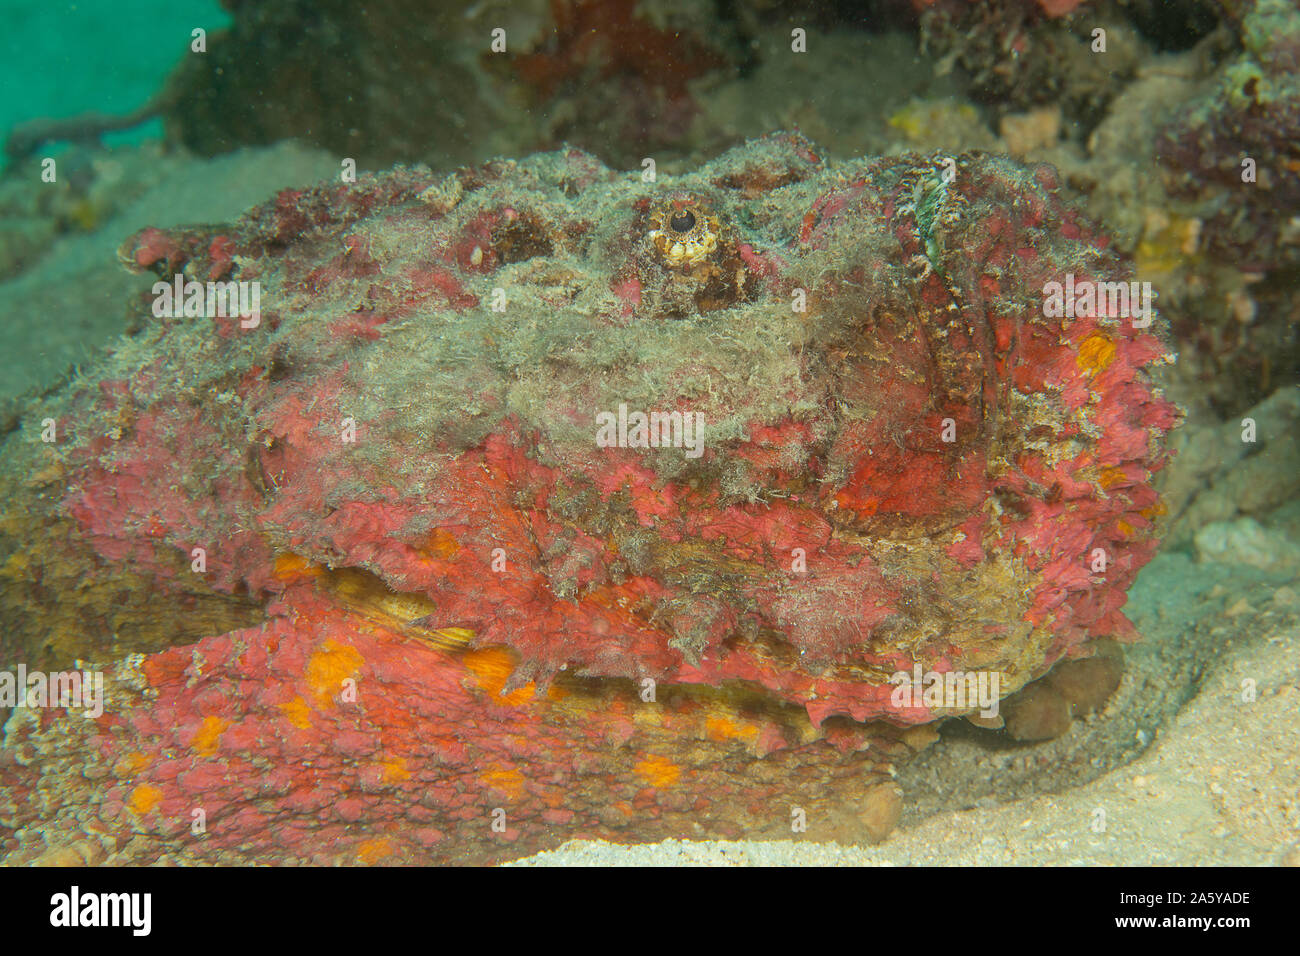 Die steinfisch Synanceia verrucosa,, ist einer der gefährlichsten Kreaturen auf tropischen Riffen. Bei dieser Art handelt es sich um Vorkommen, die eine schmerzliche, Herz Stockfoto